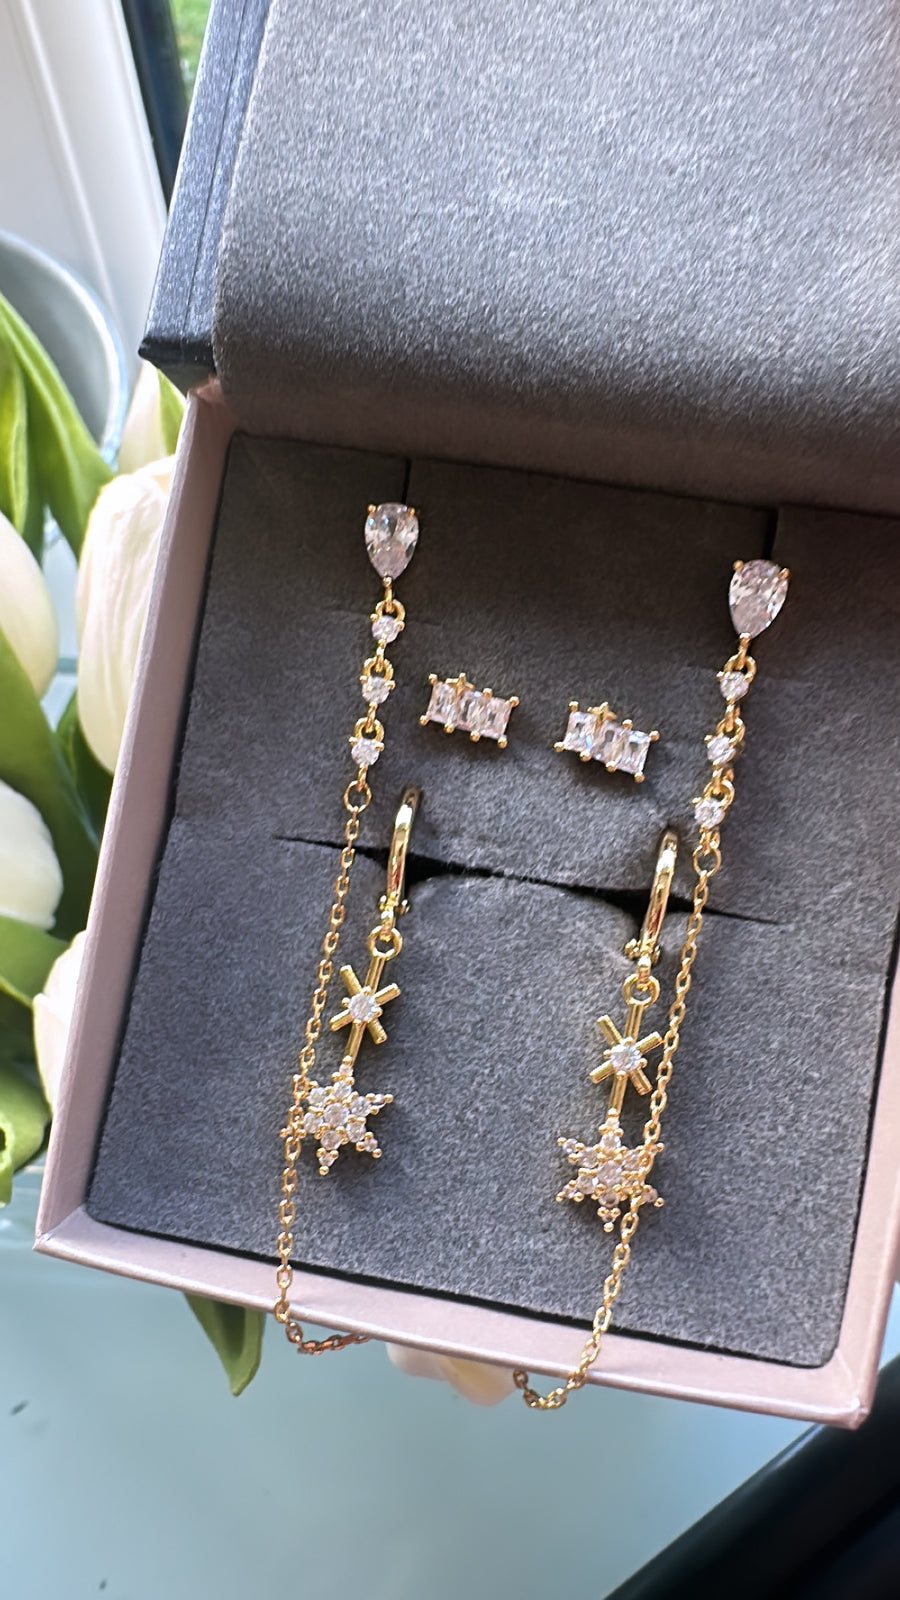 Rebecca Earrings Bundle -3 pairs of earrings